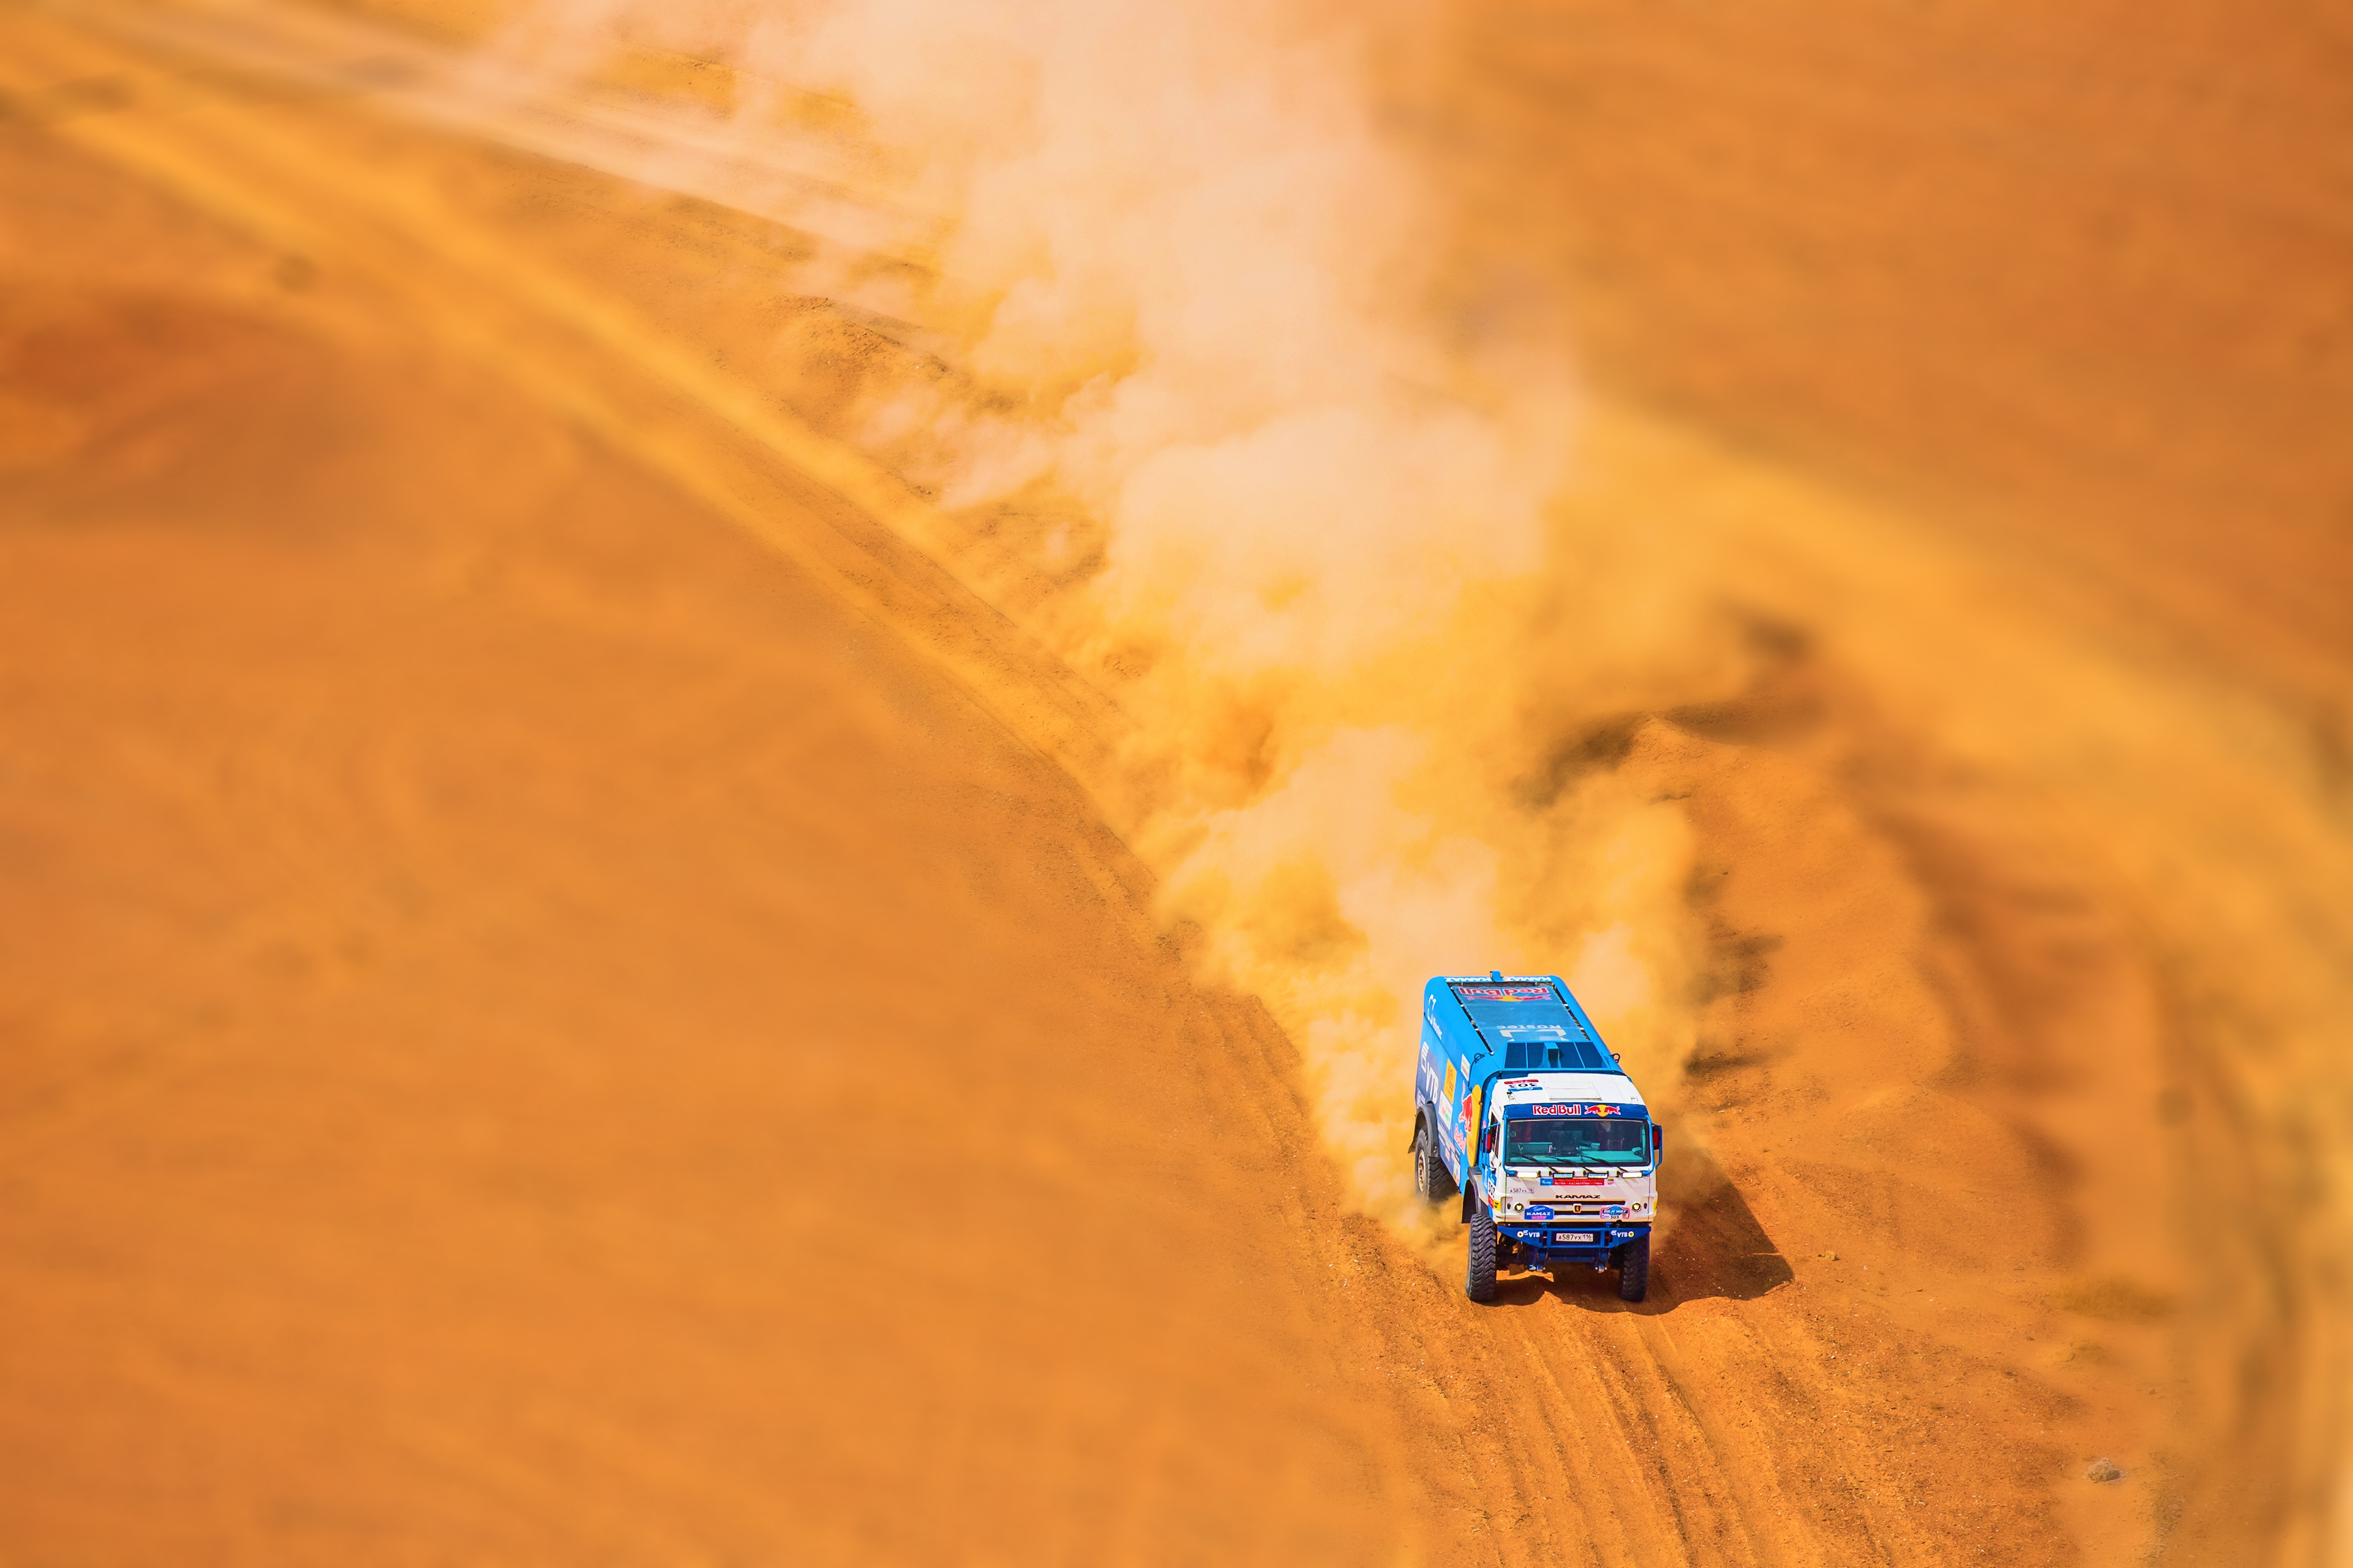 Desert Rallying Truck Vehicle 3500x2333